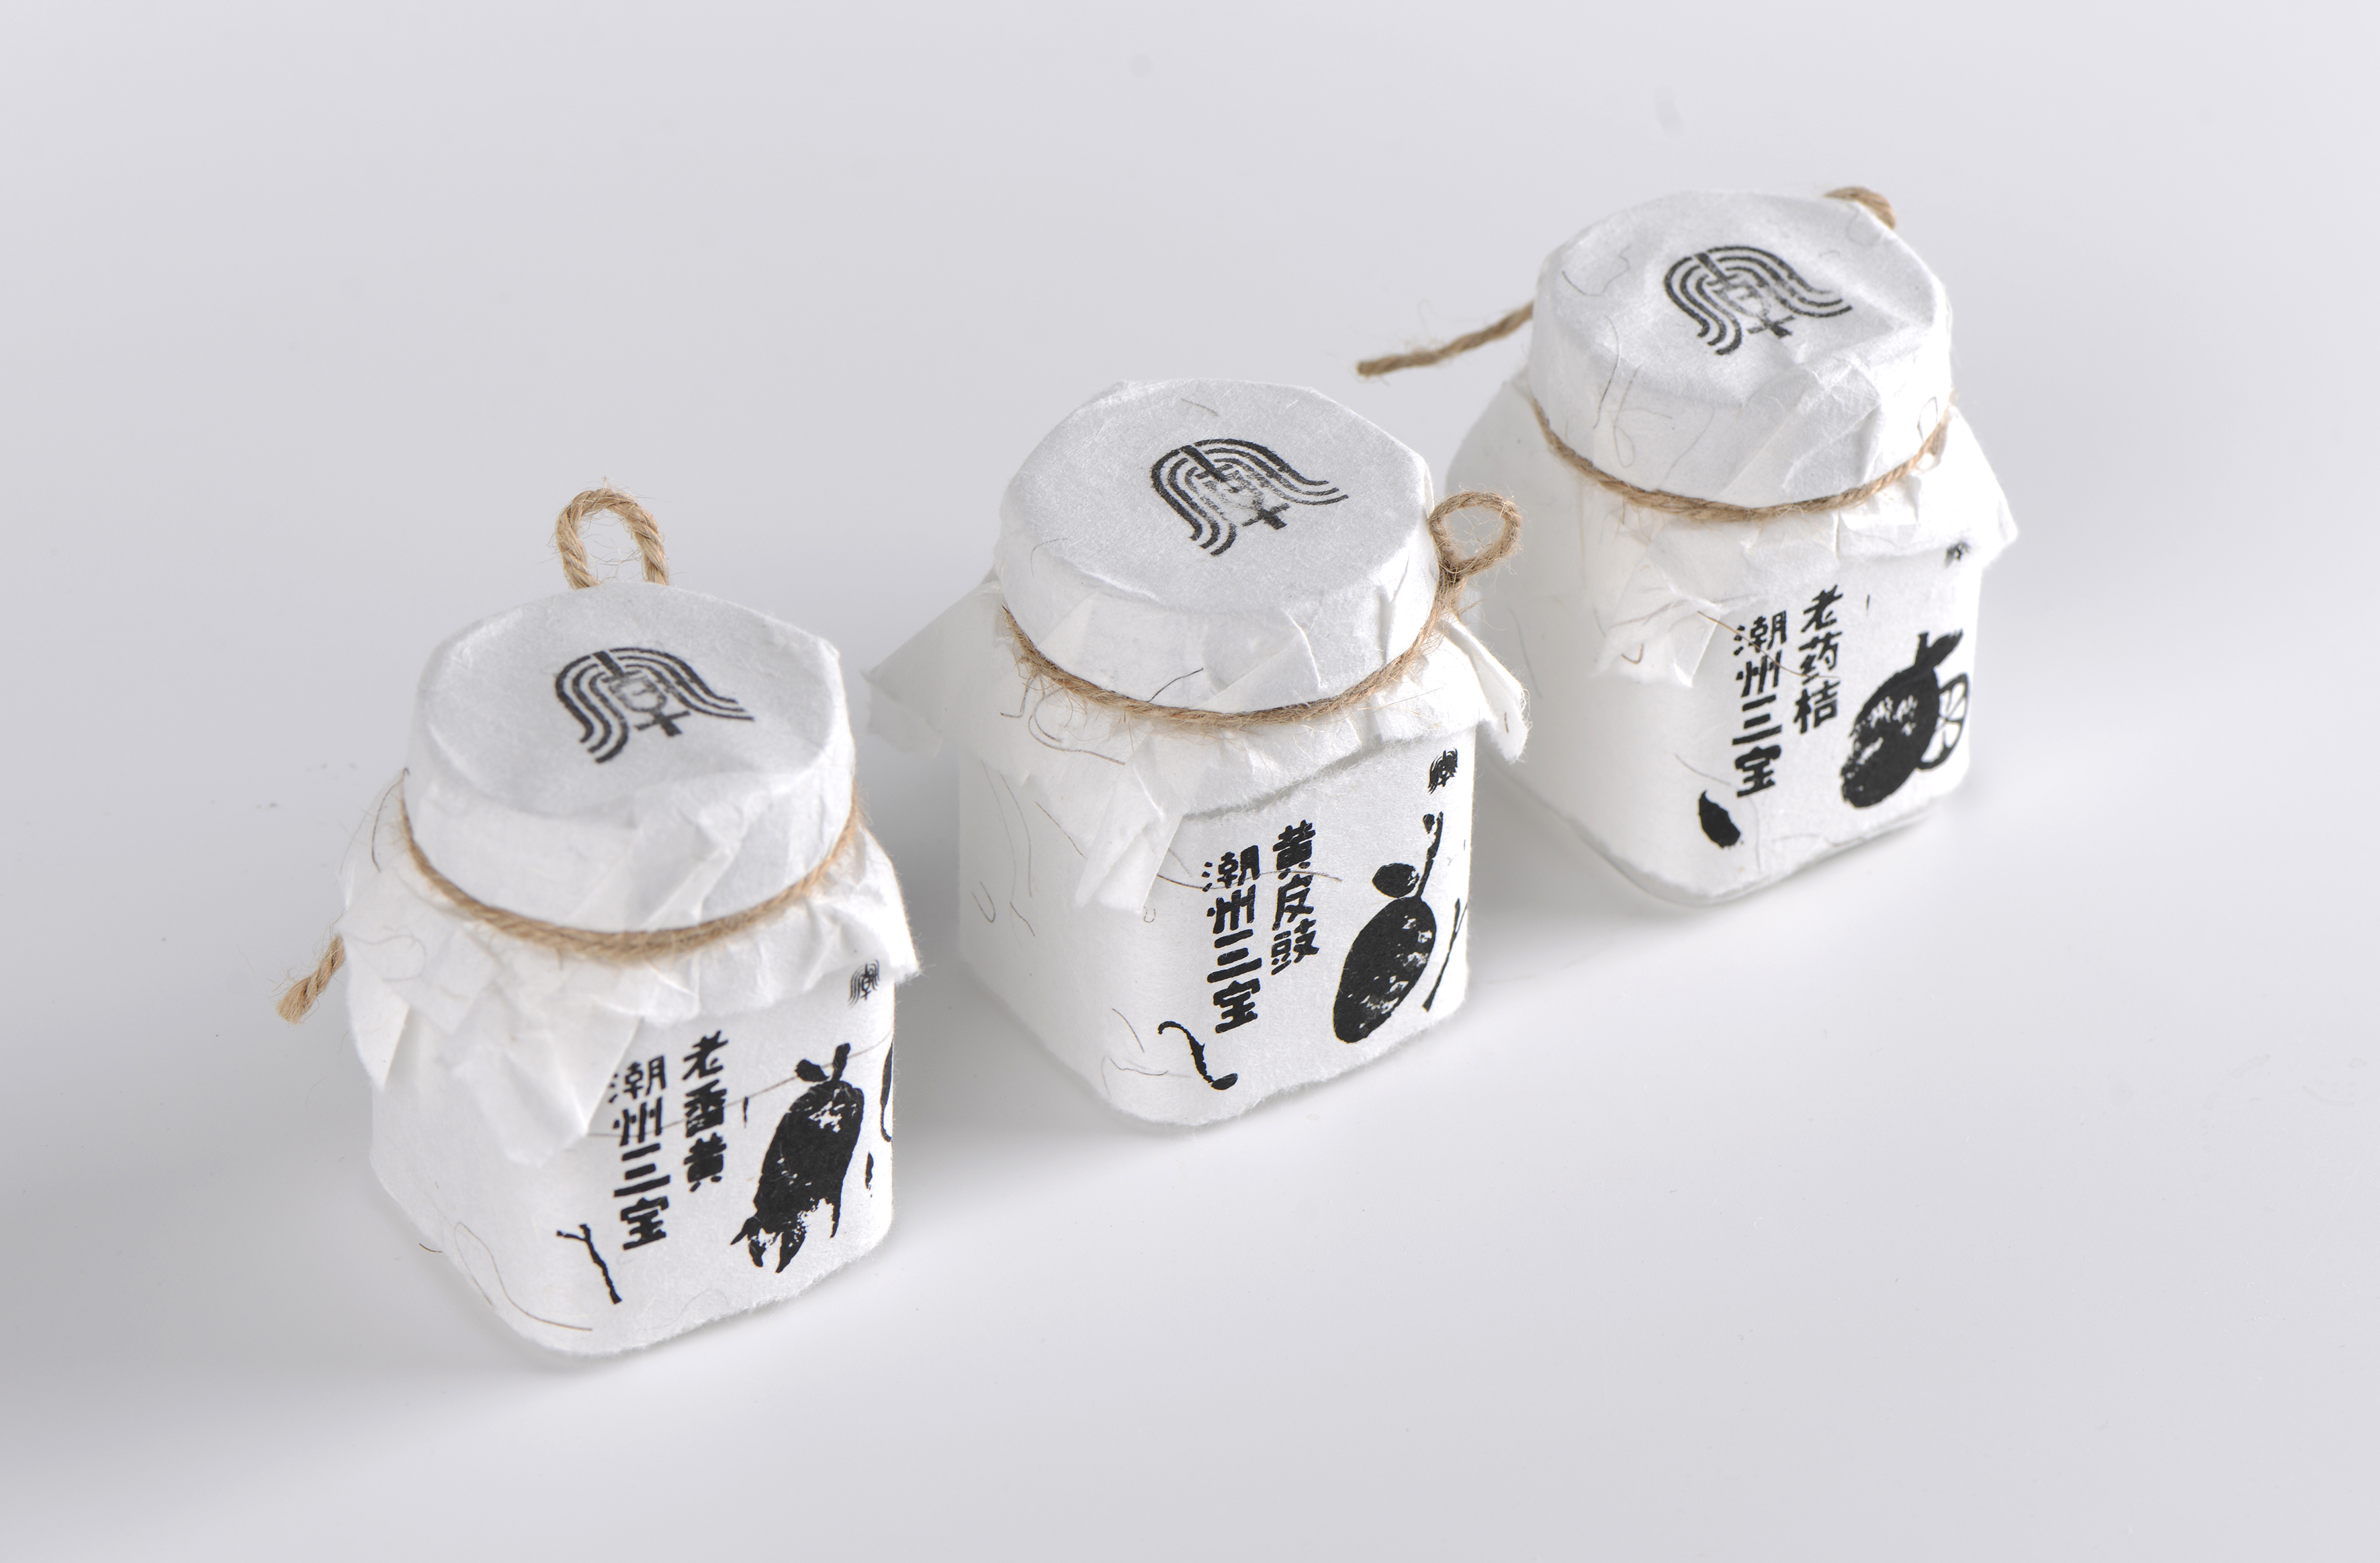 Chaozhou Sanbao Packaging Design